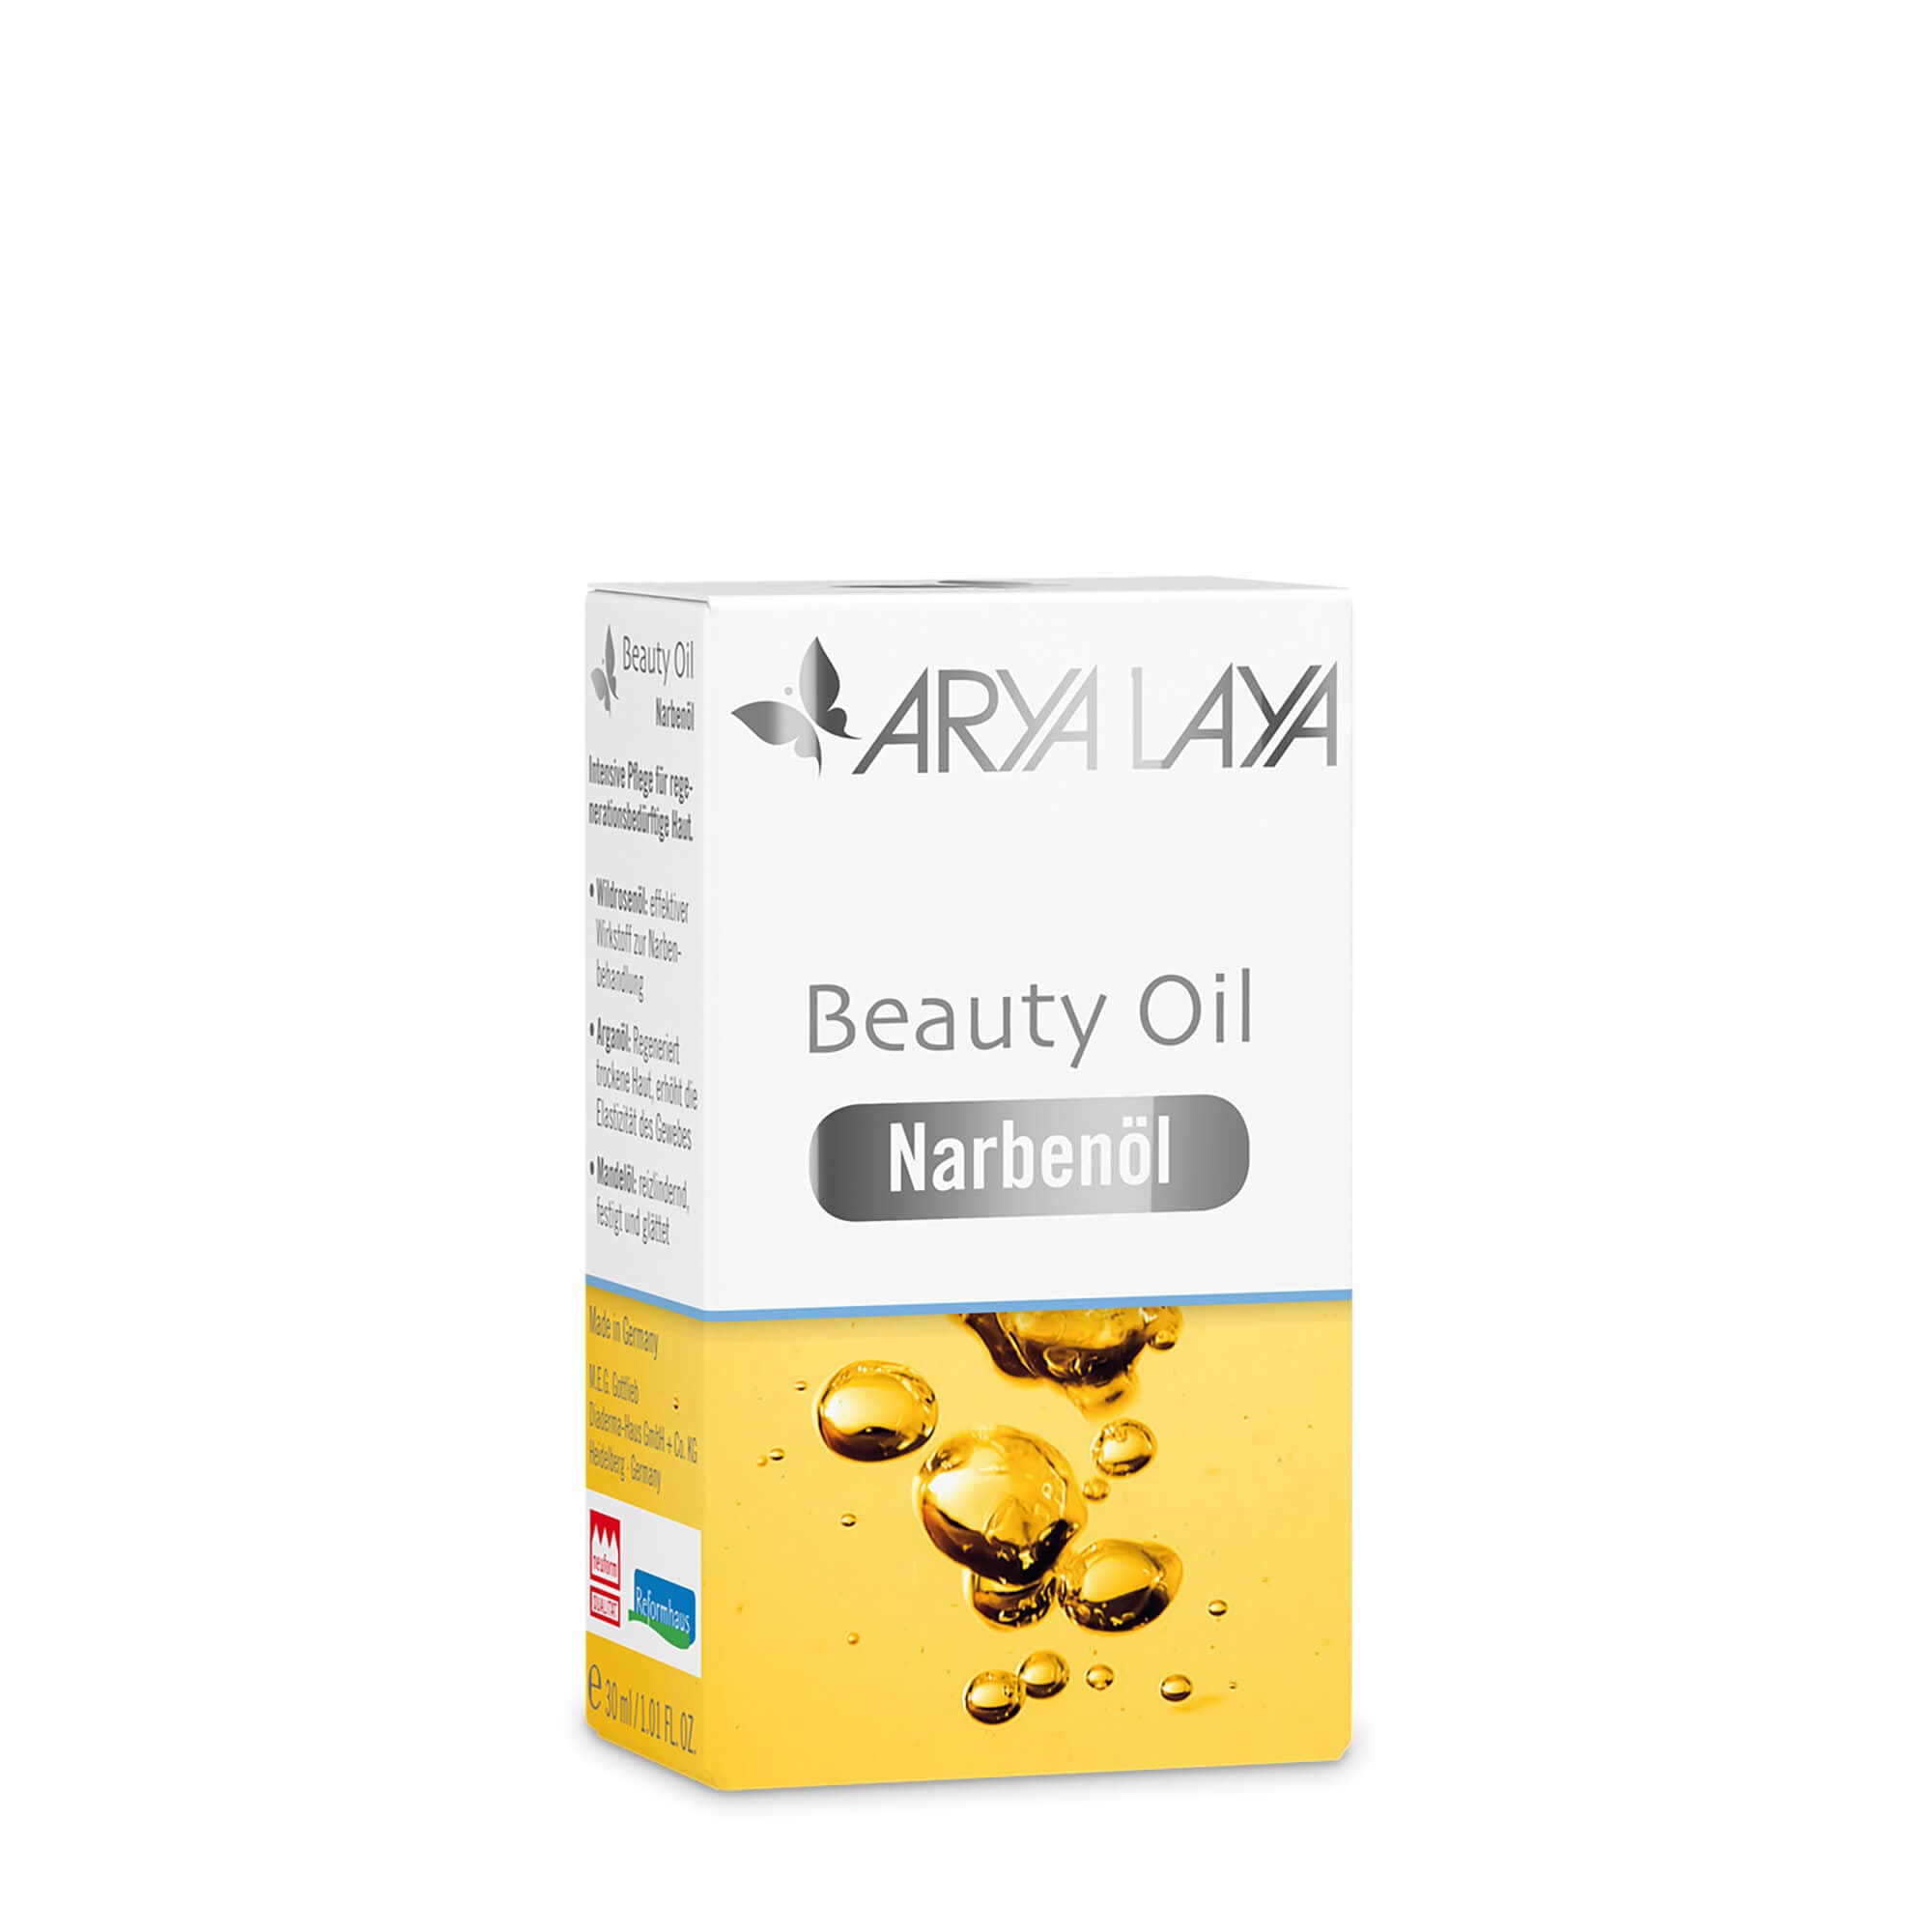 Faltschachtel mit ARYA LAYA Beauty Oil Narbenöl, 30 ml 